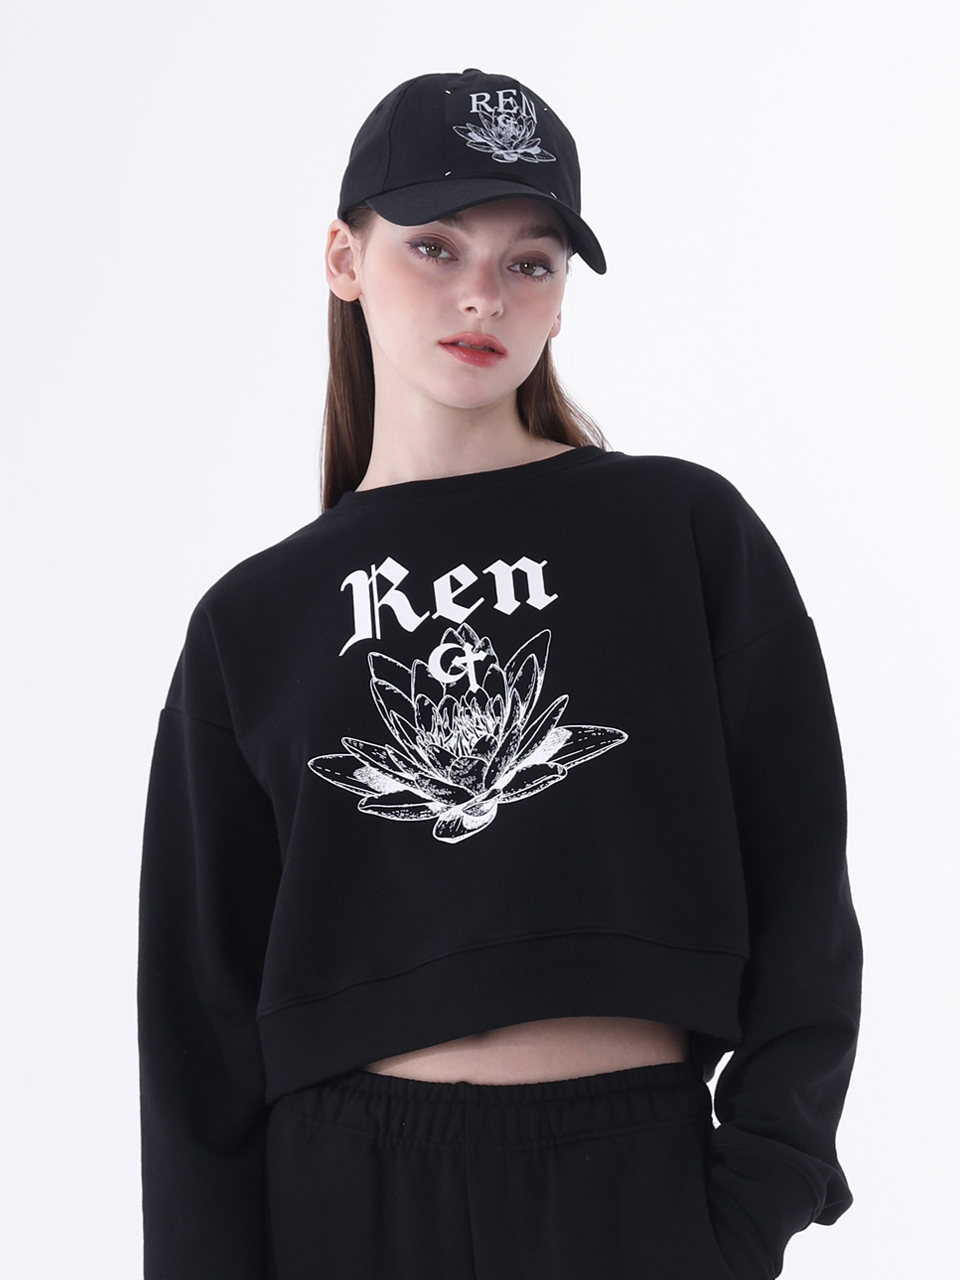 0 9 Ren crop sweatshirt - BLACK